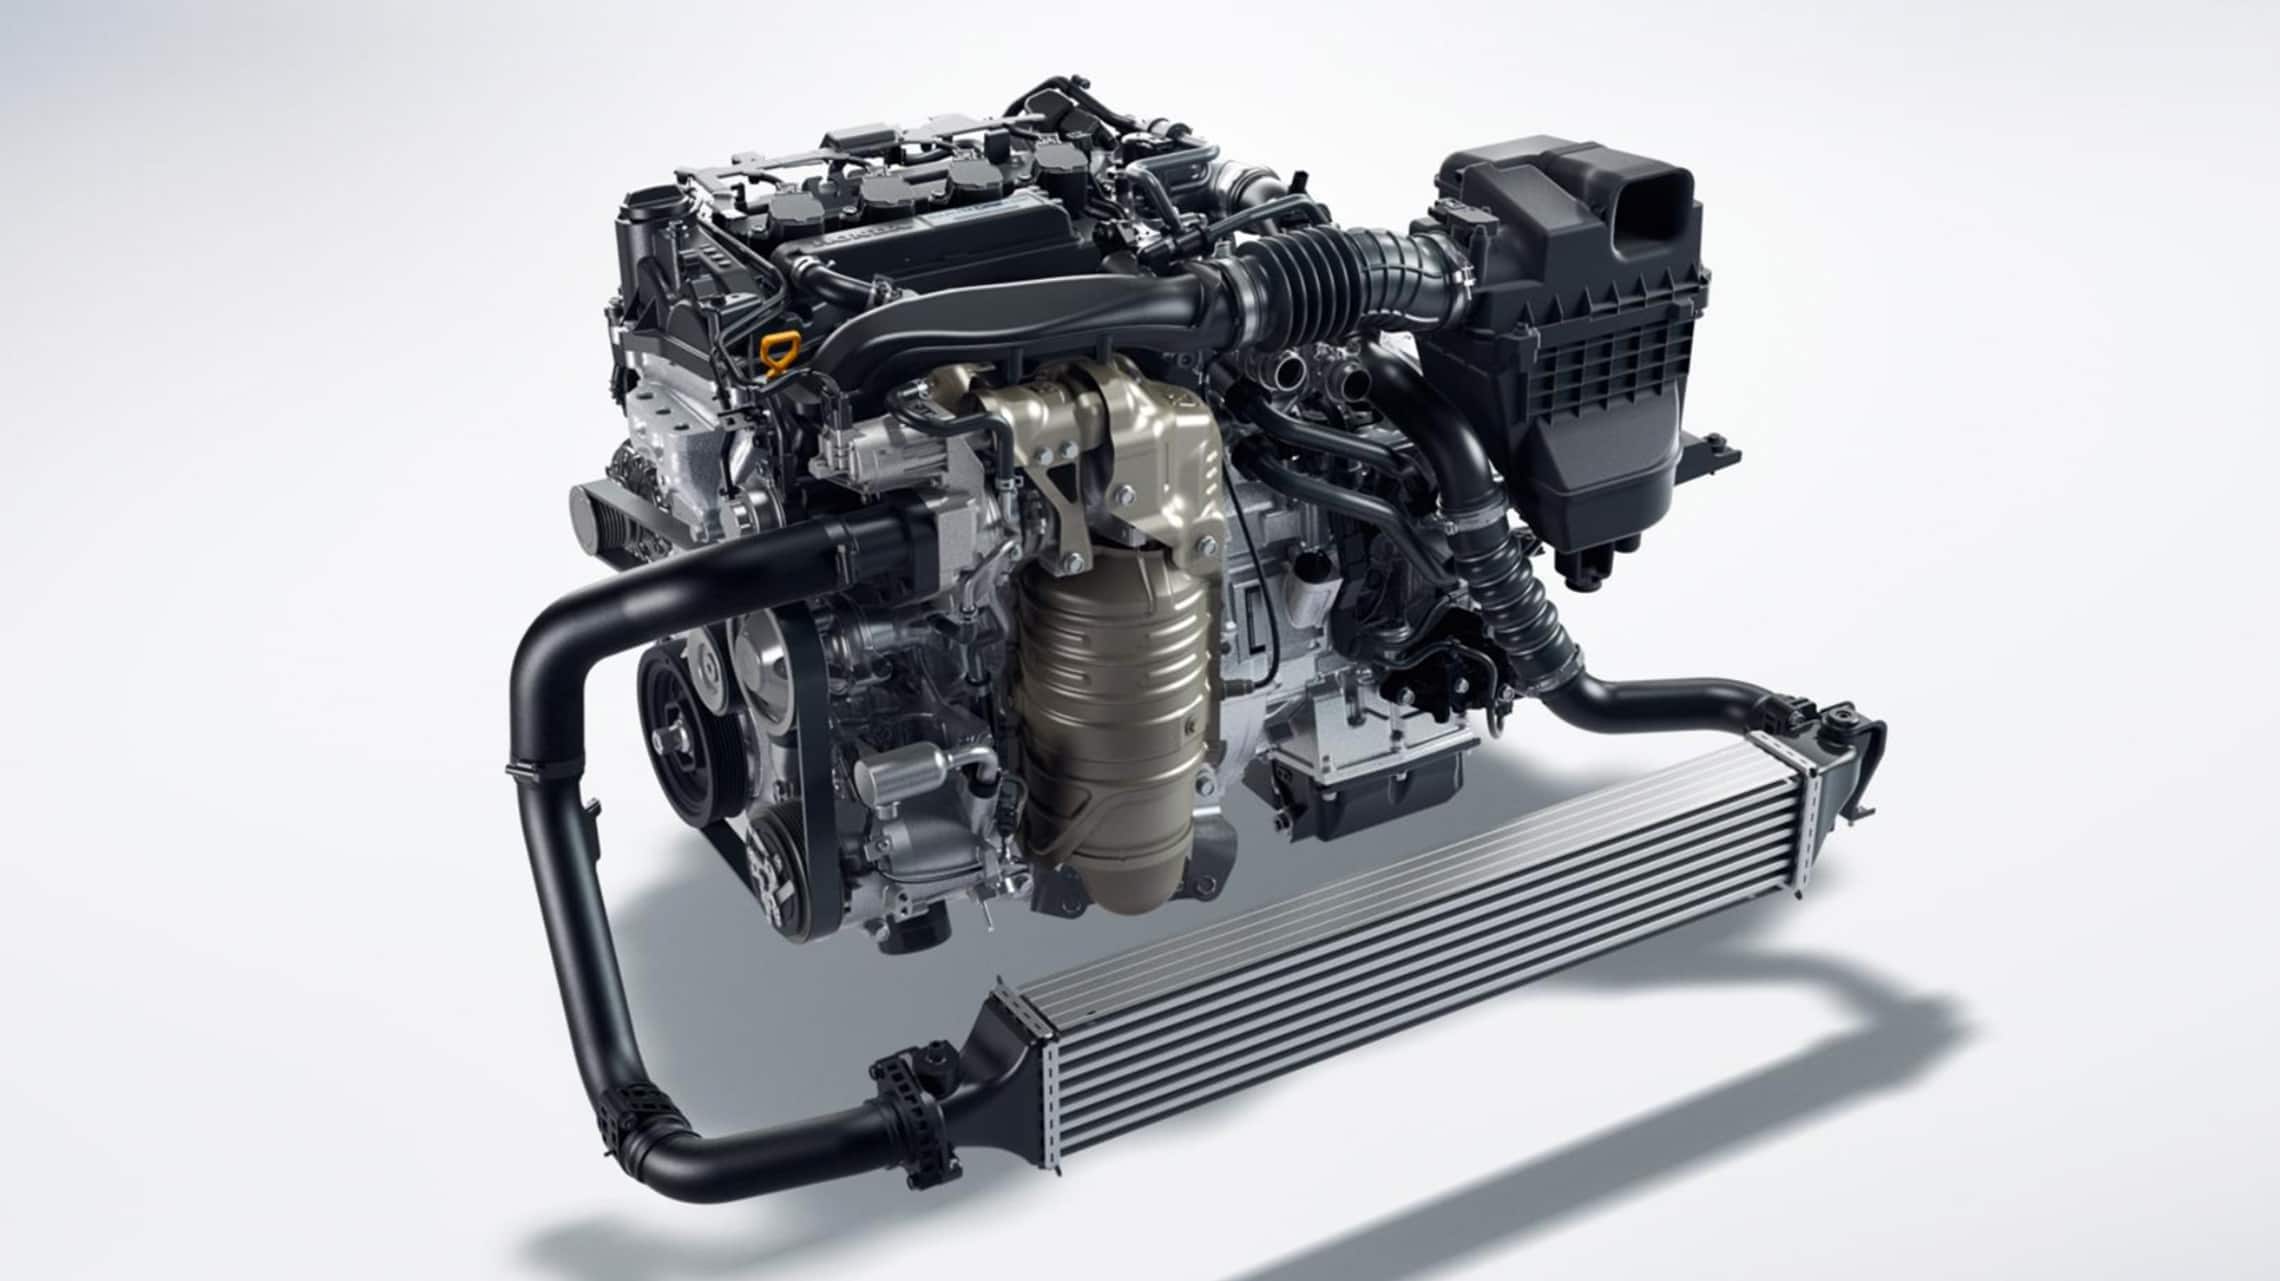 Detalle del motor turboalimentado de 1.5 litros en el Honda Civic Hatchback 2021.